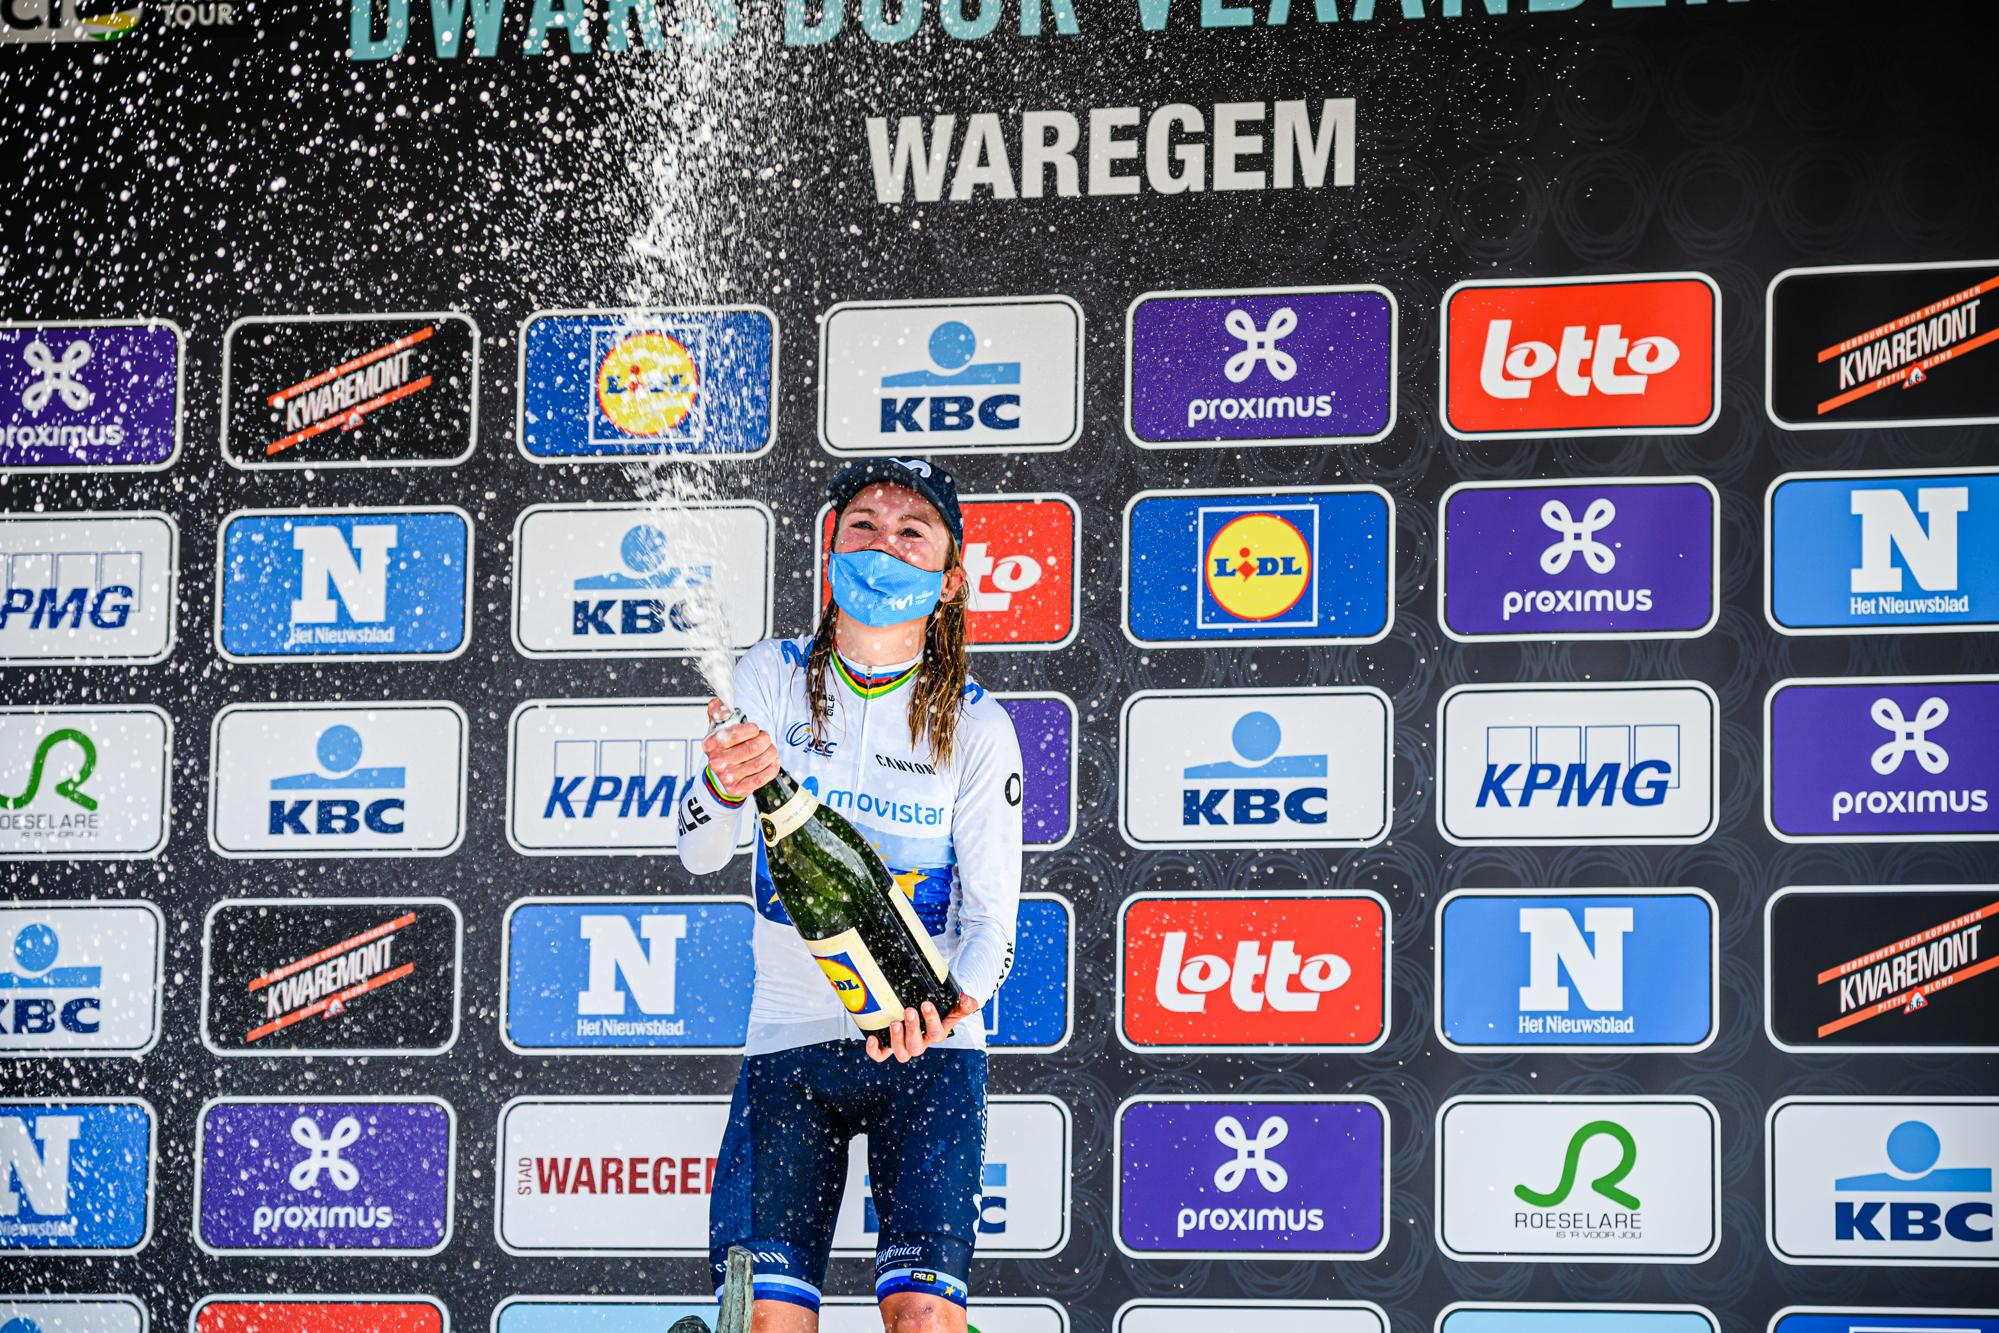 Van Vleuten wins 9th edition for women